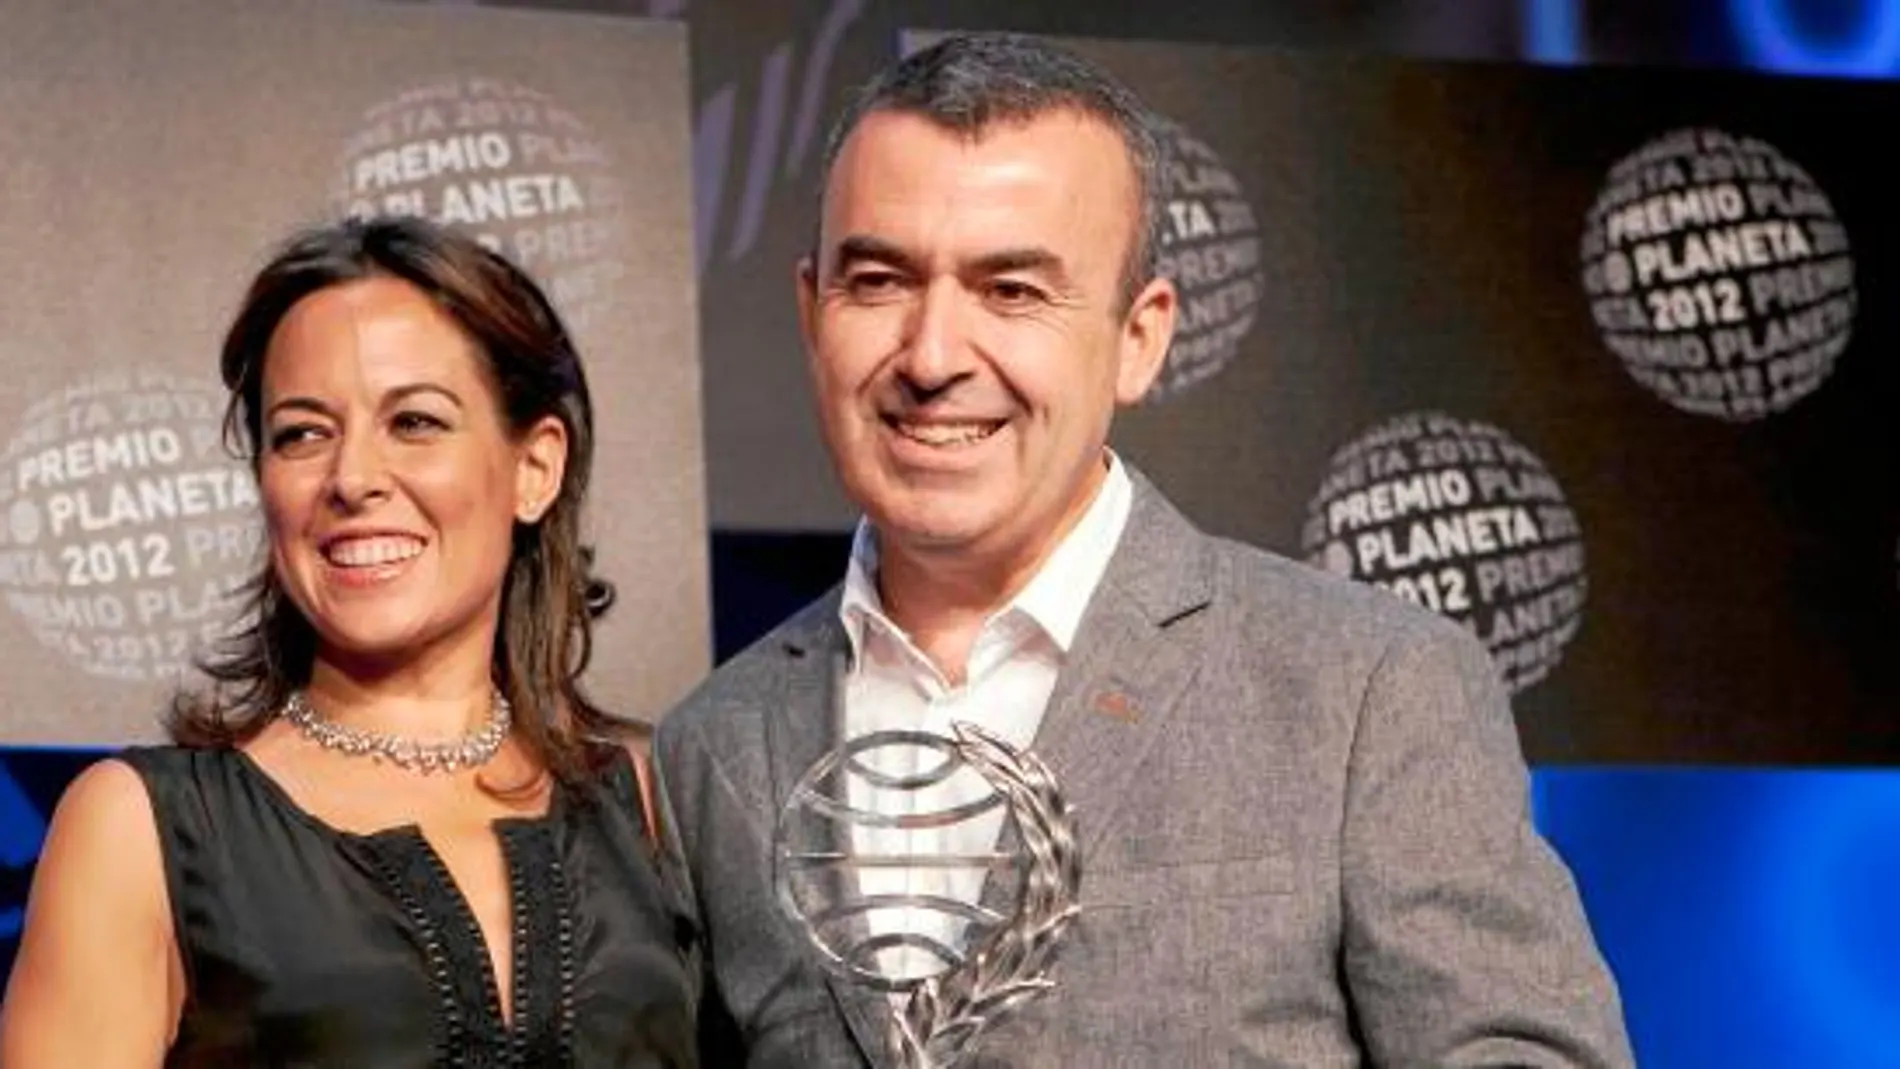 Lorenzo Silva, ganador, y Mara Torres, finalista, posan juntos en Barcelona después de que él recibiera el galardón